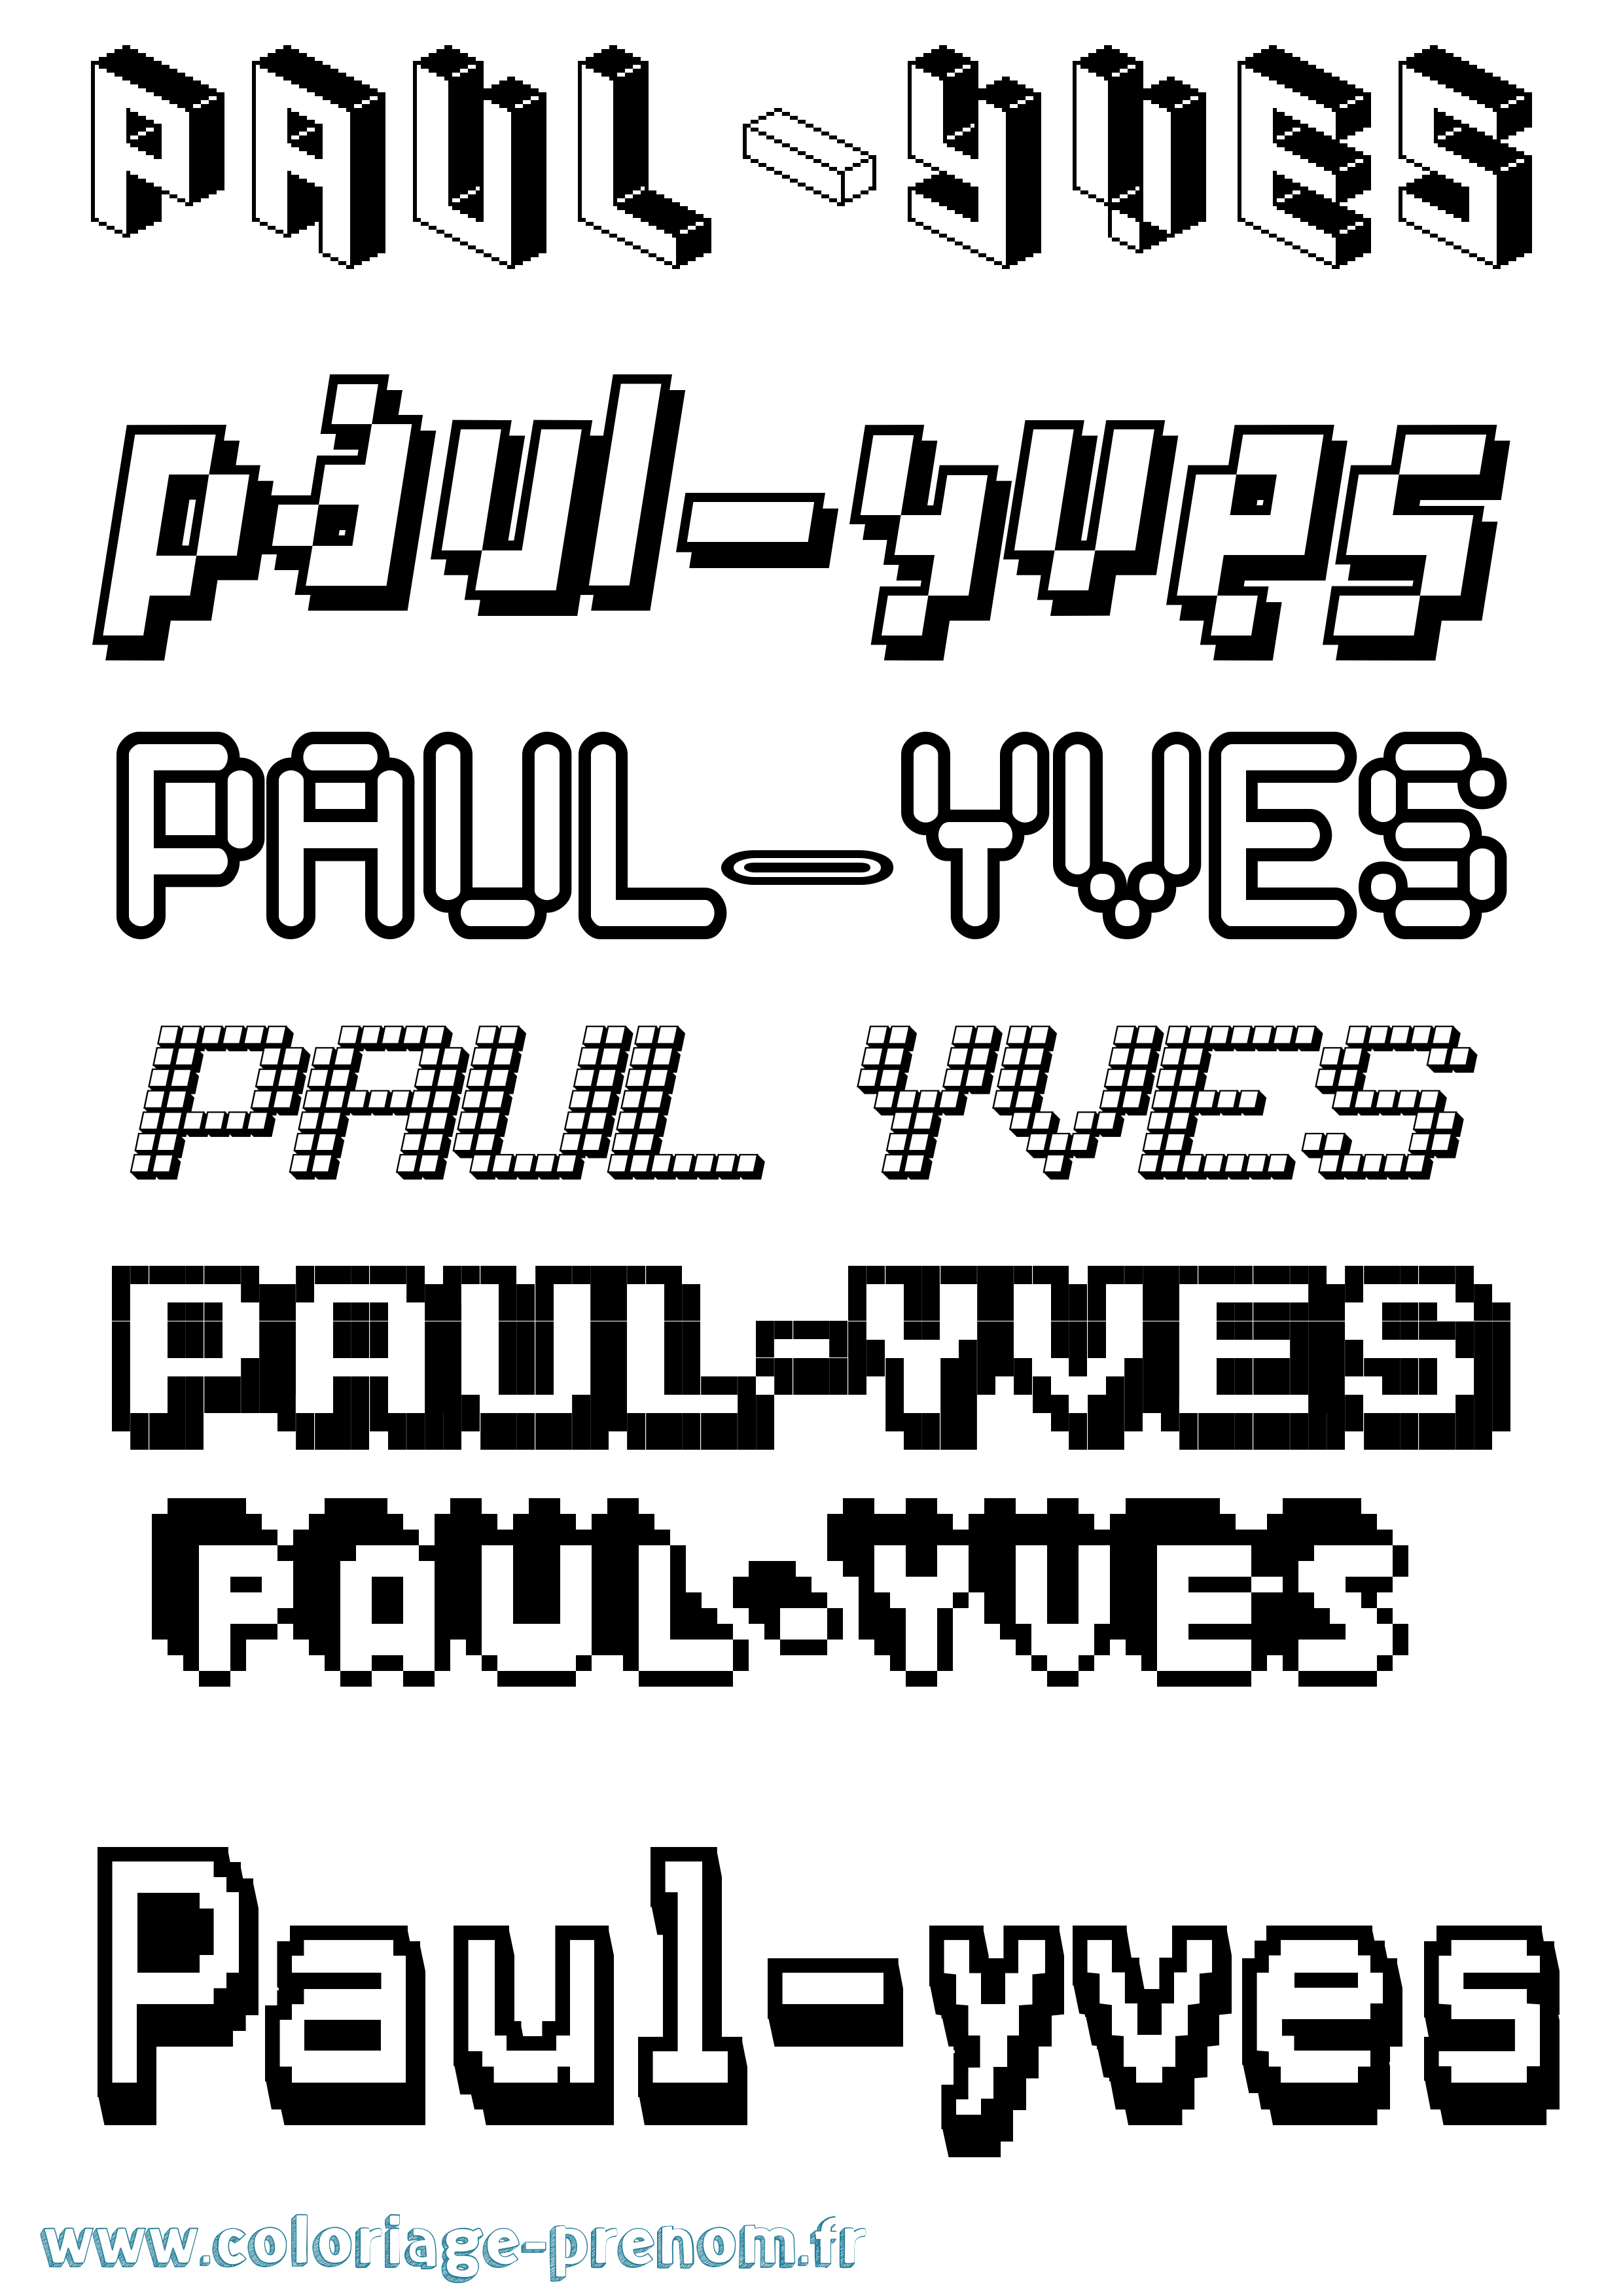 Coloriage prénom Paul-Yves Pixel